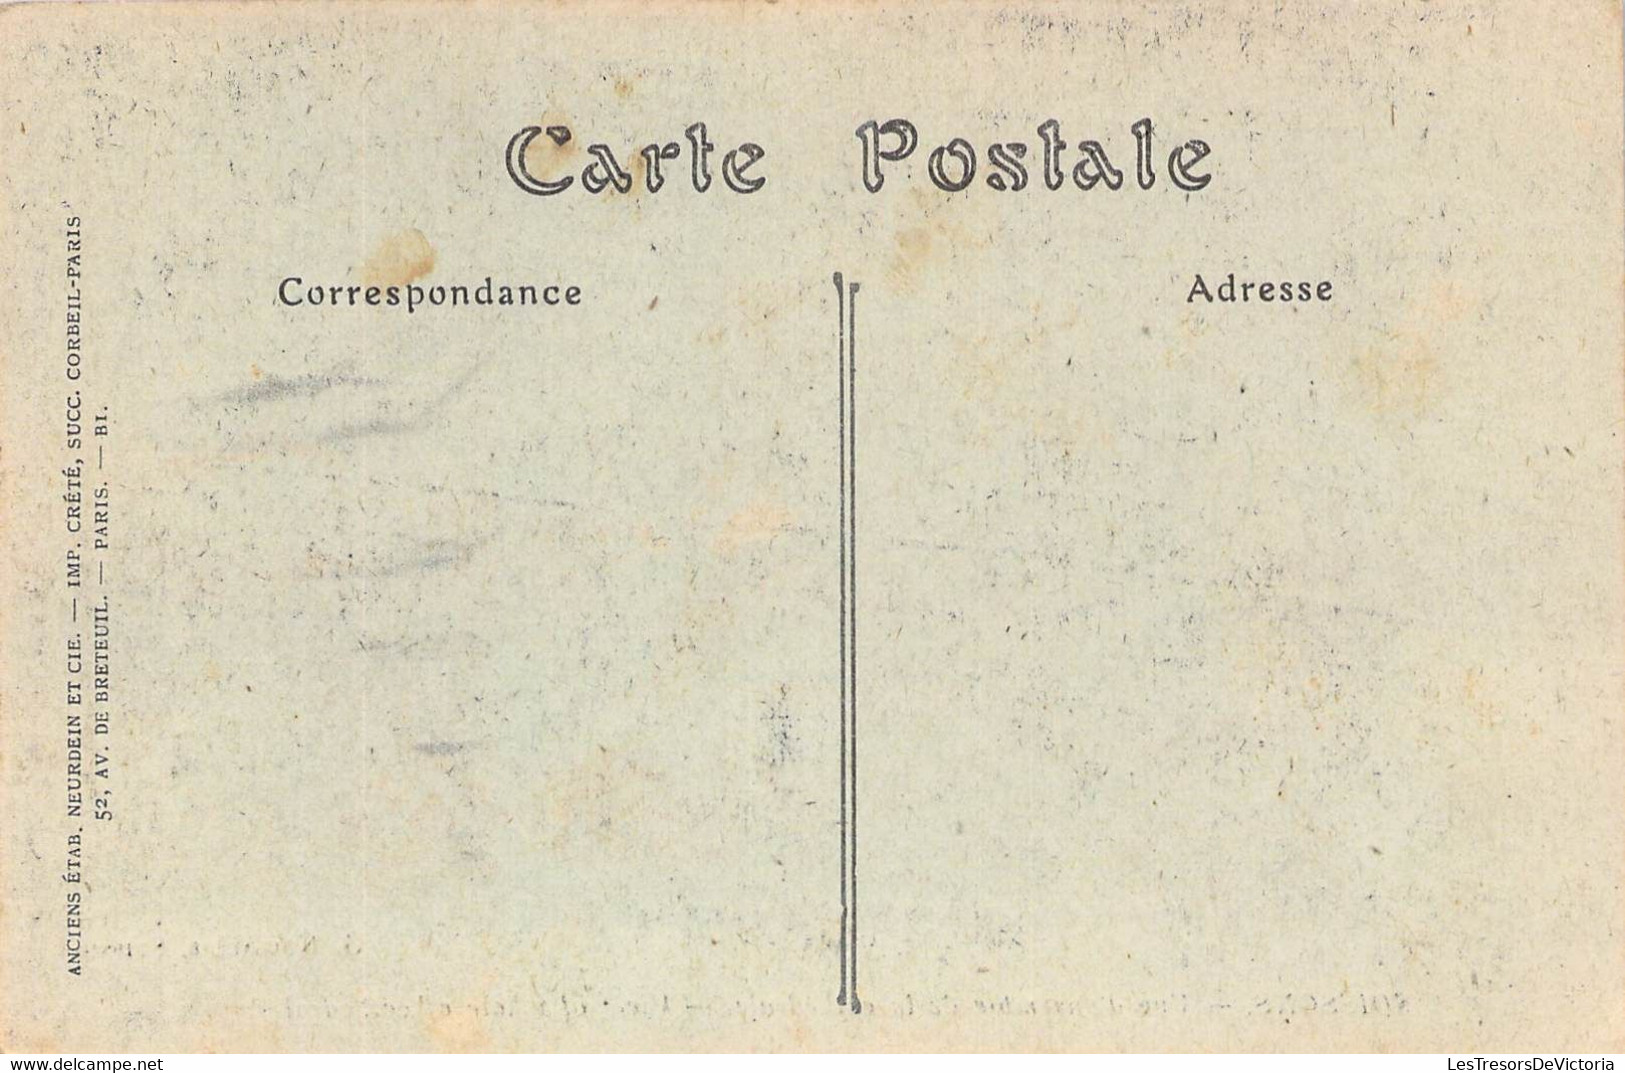 CPA - 02 - SOISSONS - Vue D'ensemble De La Cathédrale - Ruines - Neurdein - Soissons